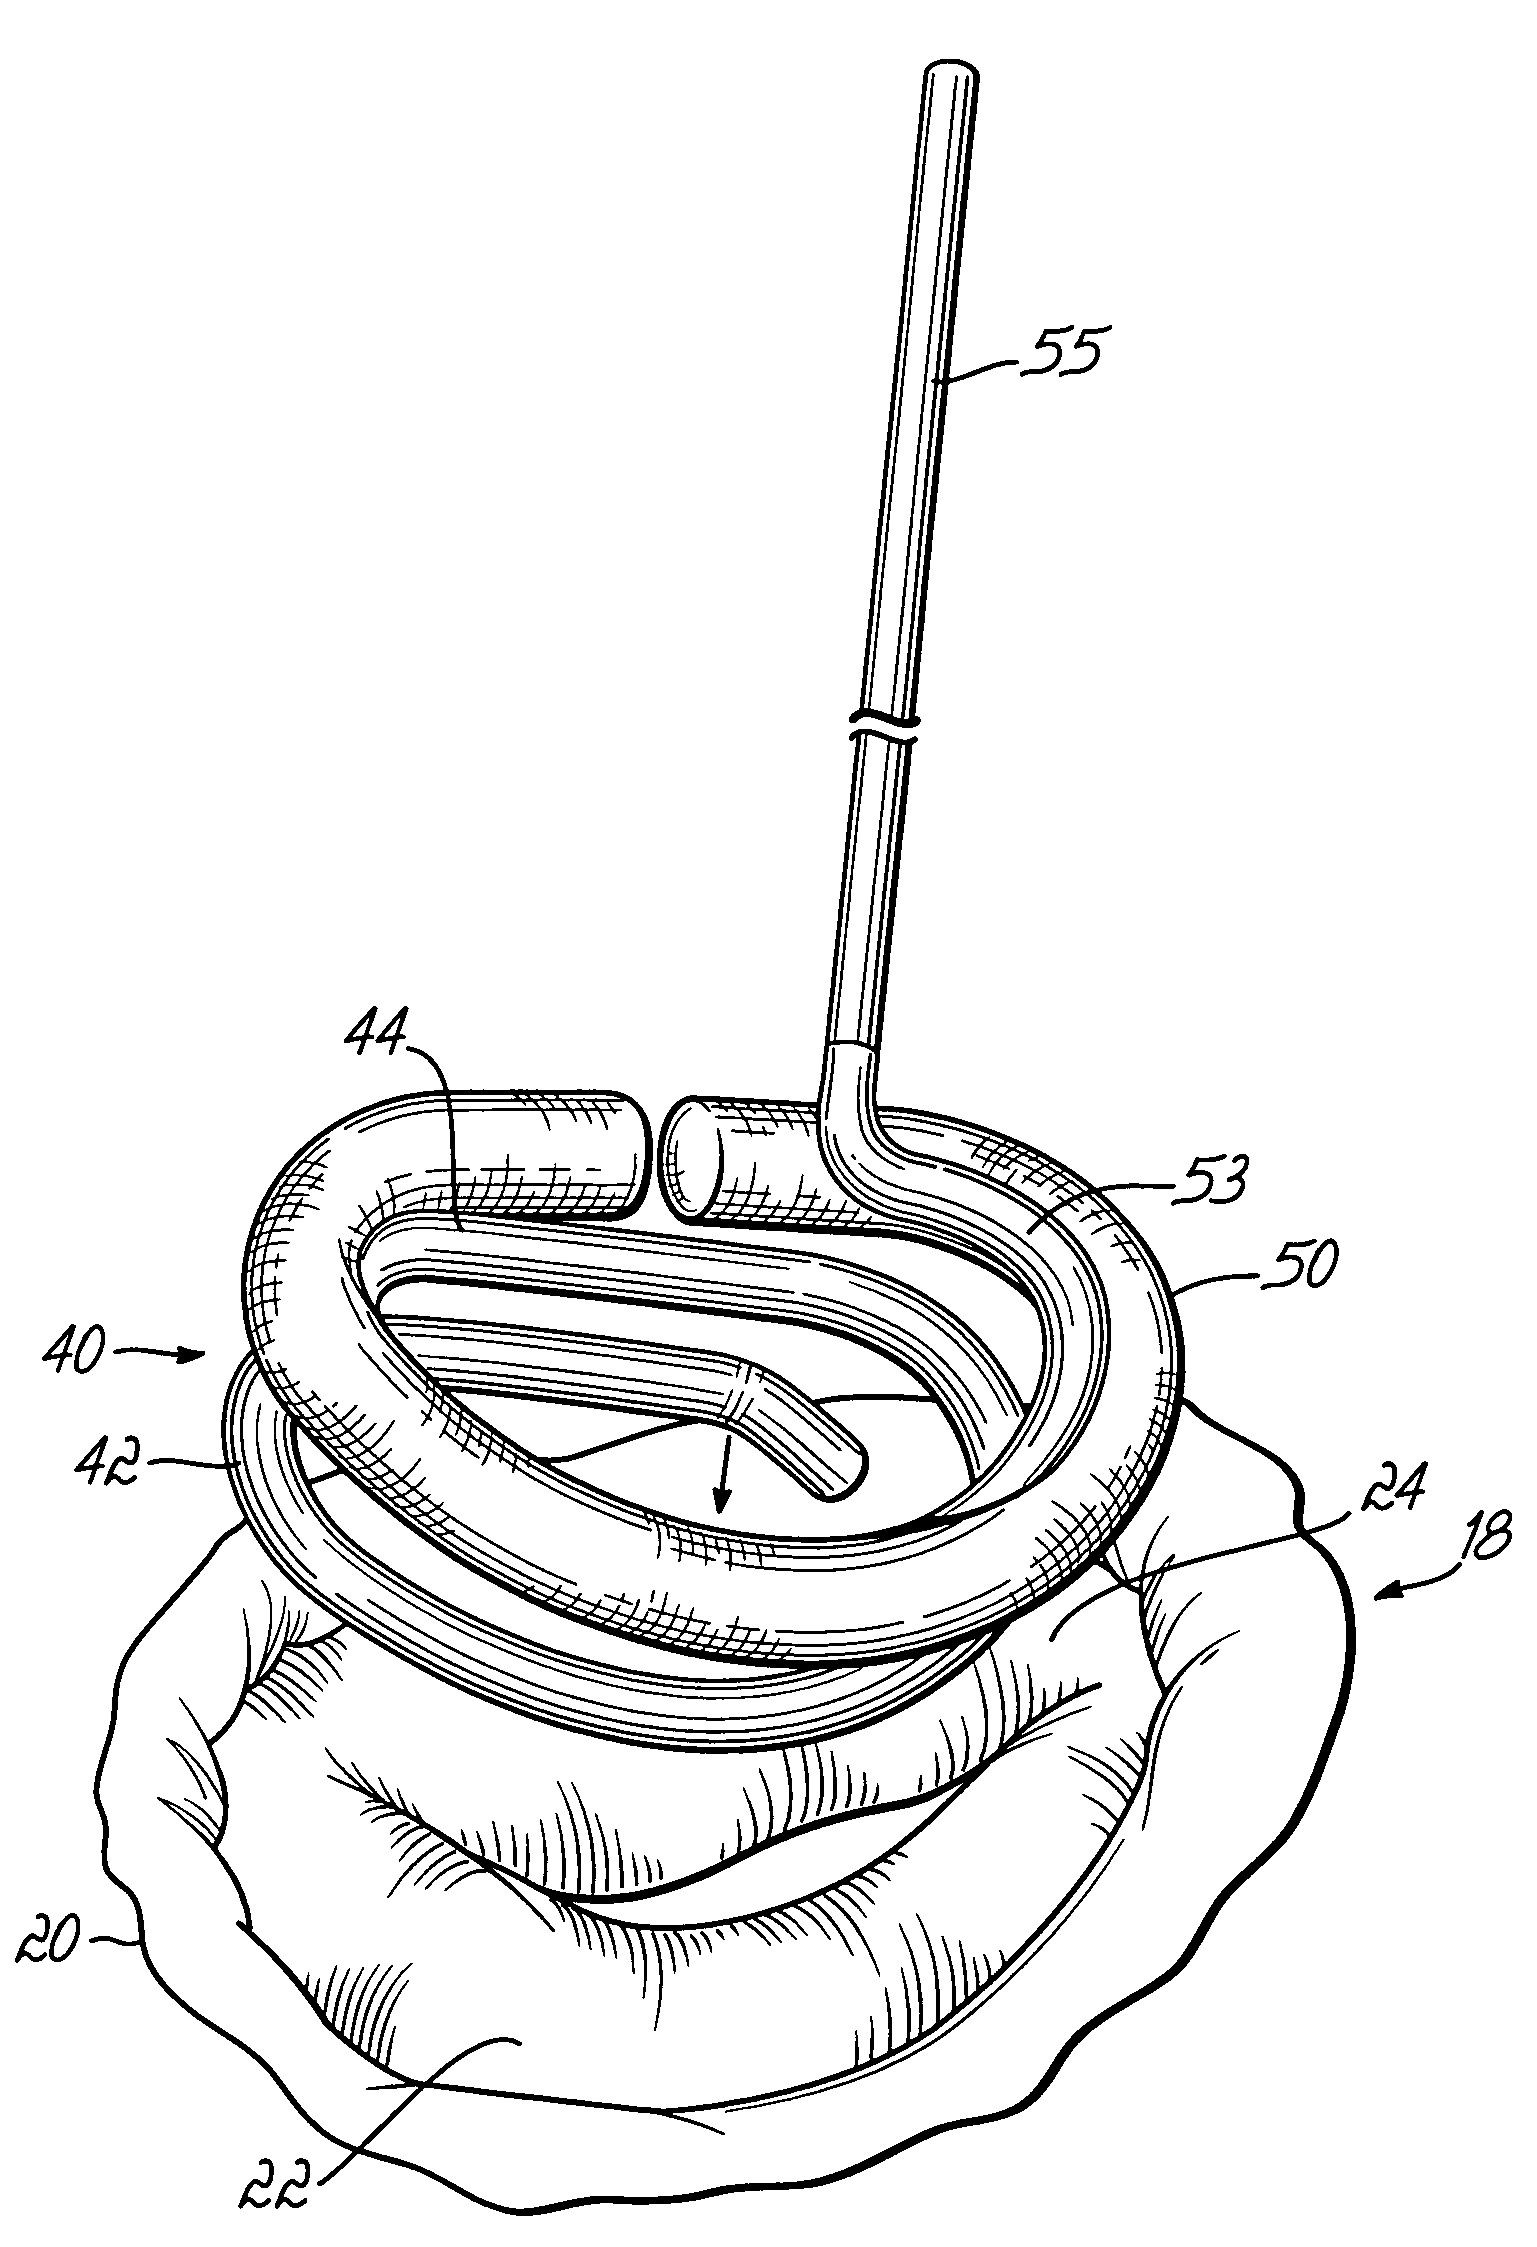 Annuloplasty instrument